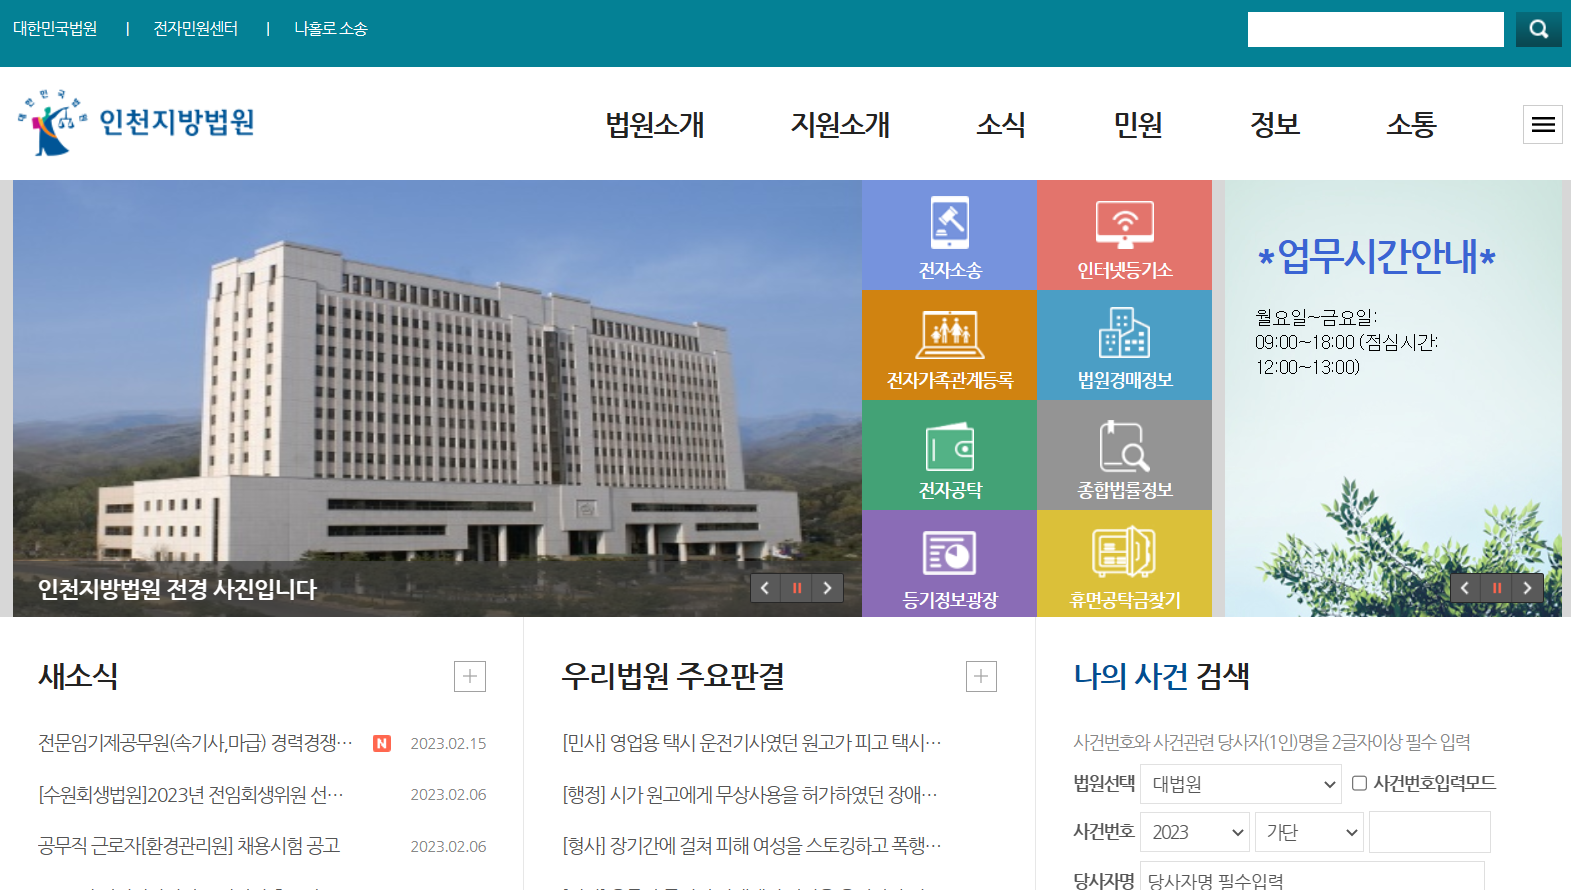 인천지방법원 홈페이지